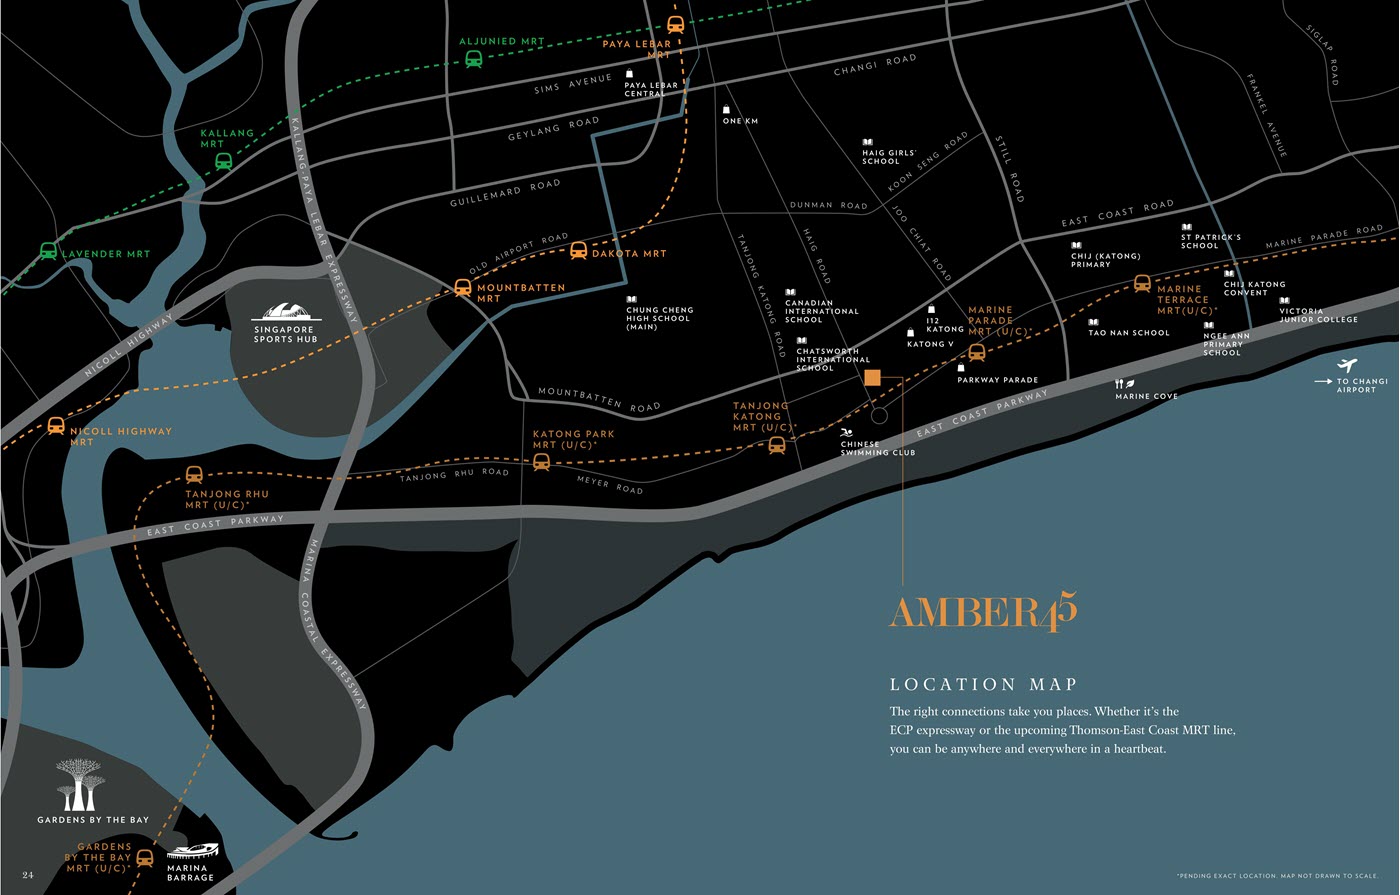 Amber 45 Condo Location Map